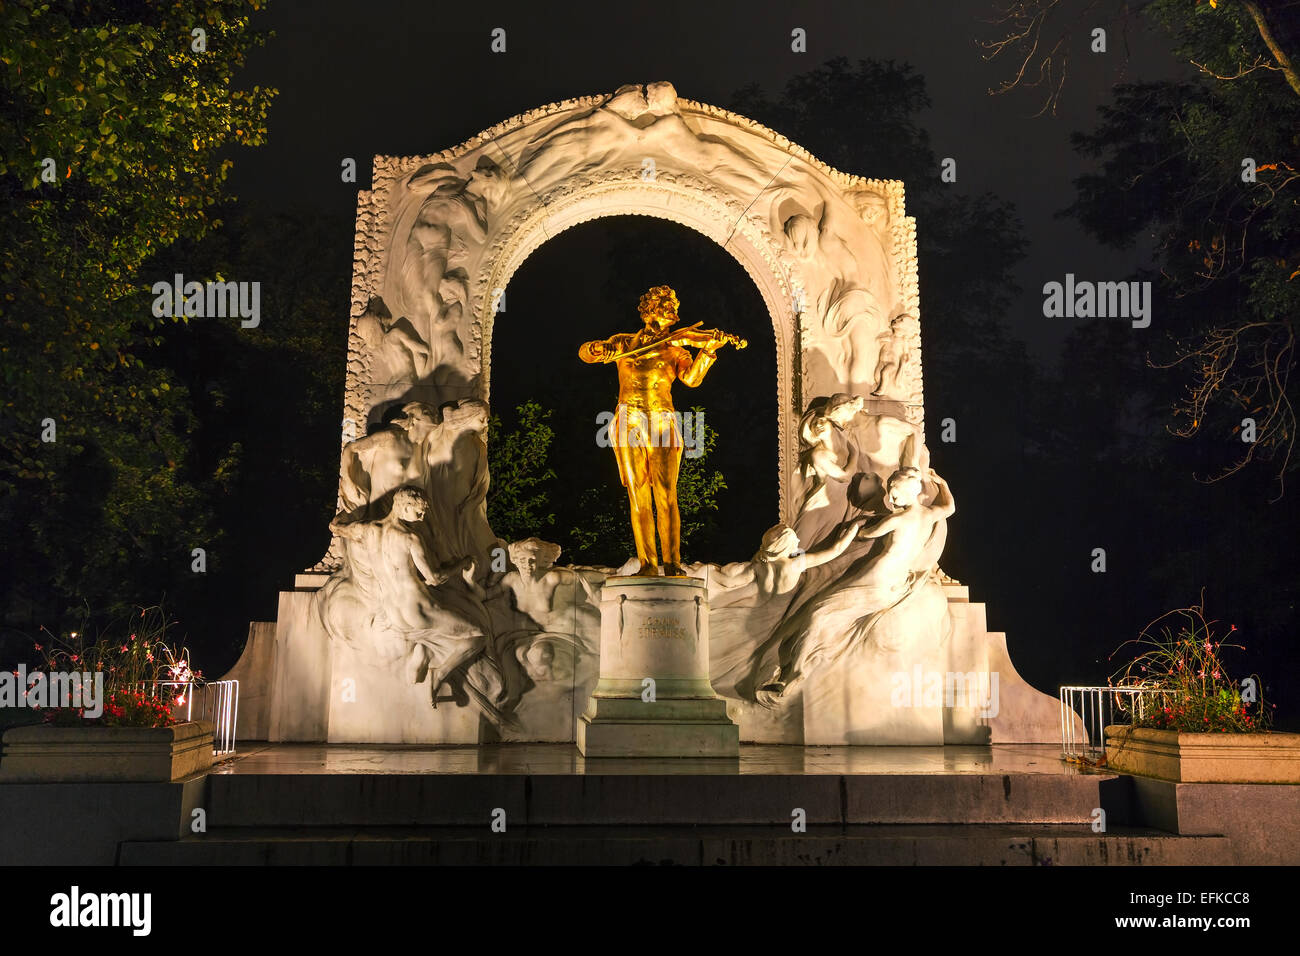 Johann Strauss statue at Stadtpark in Vienna, Austria Stock Photo